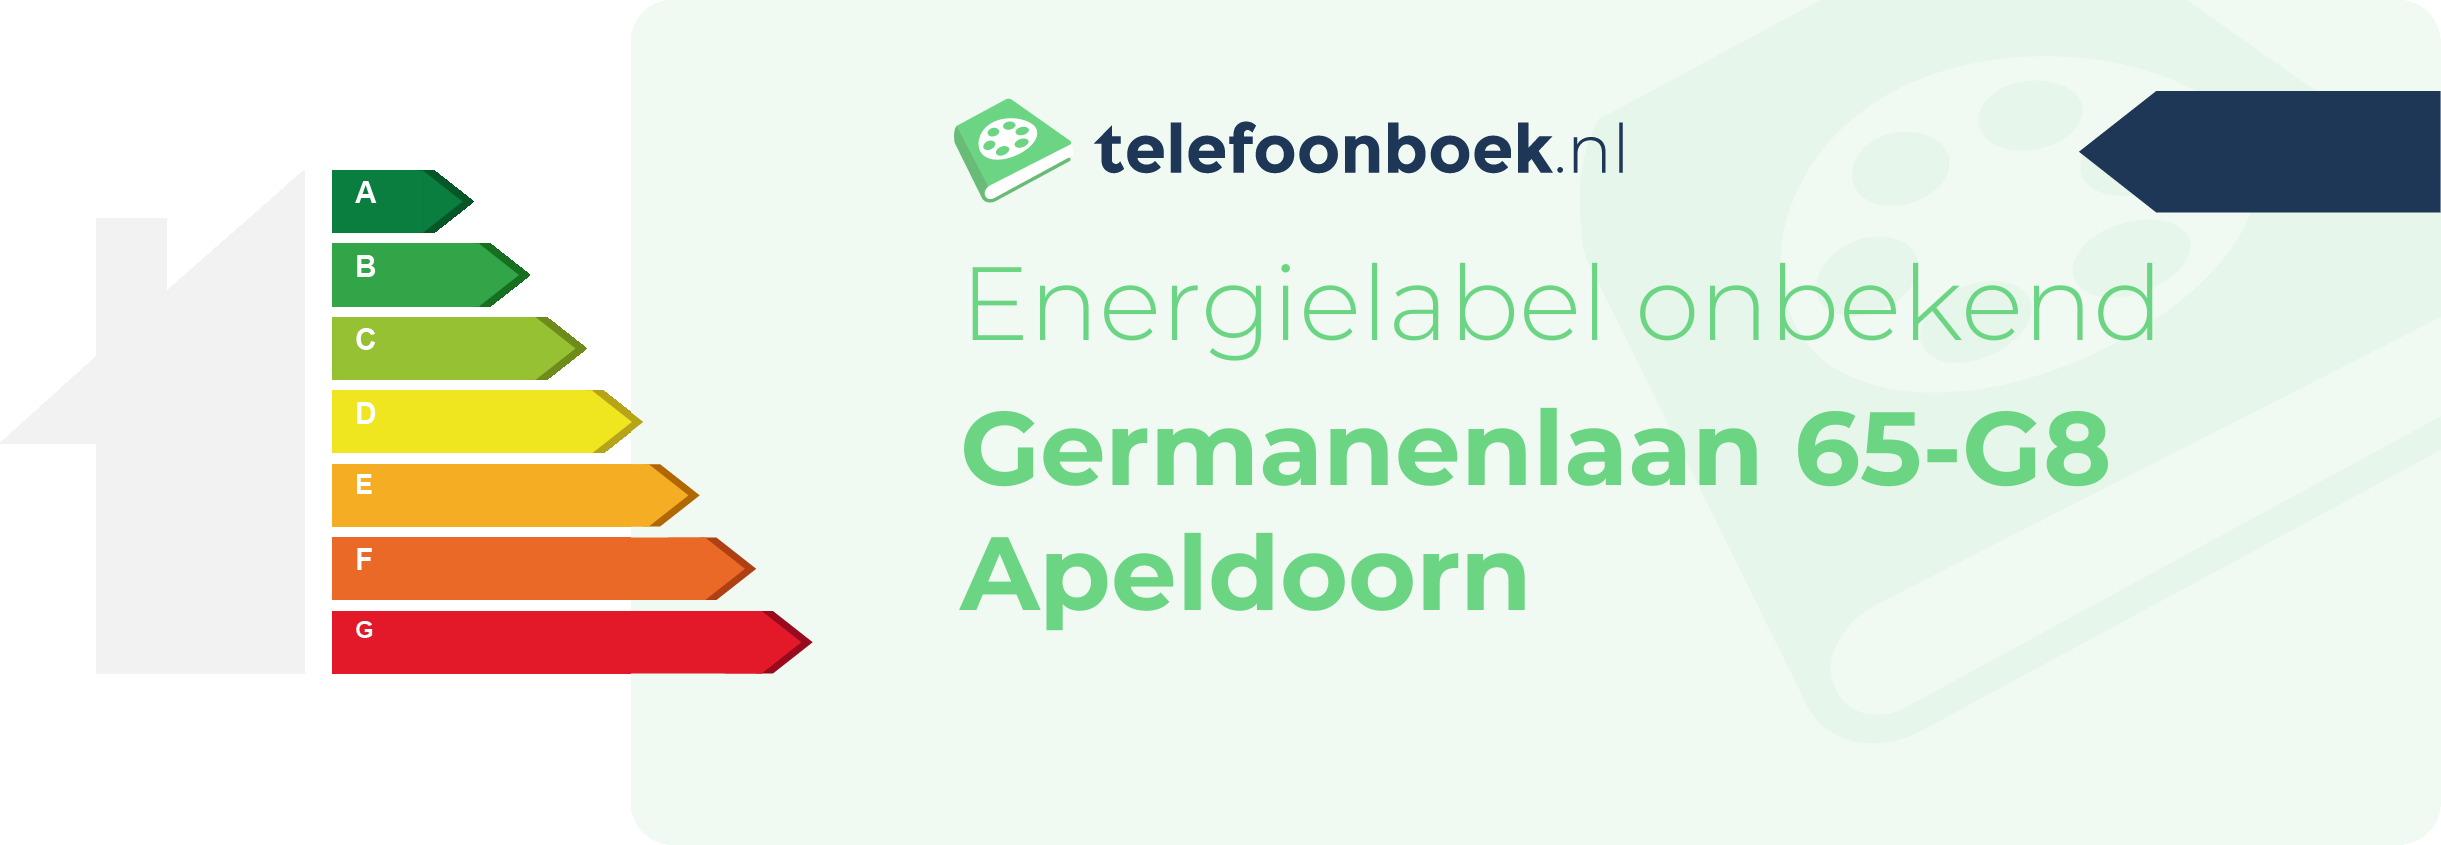 Energielabel Germanenlaan 65-G8 Apeldoorn